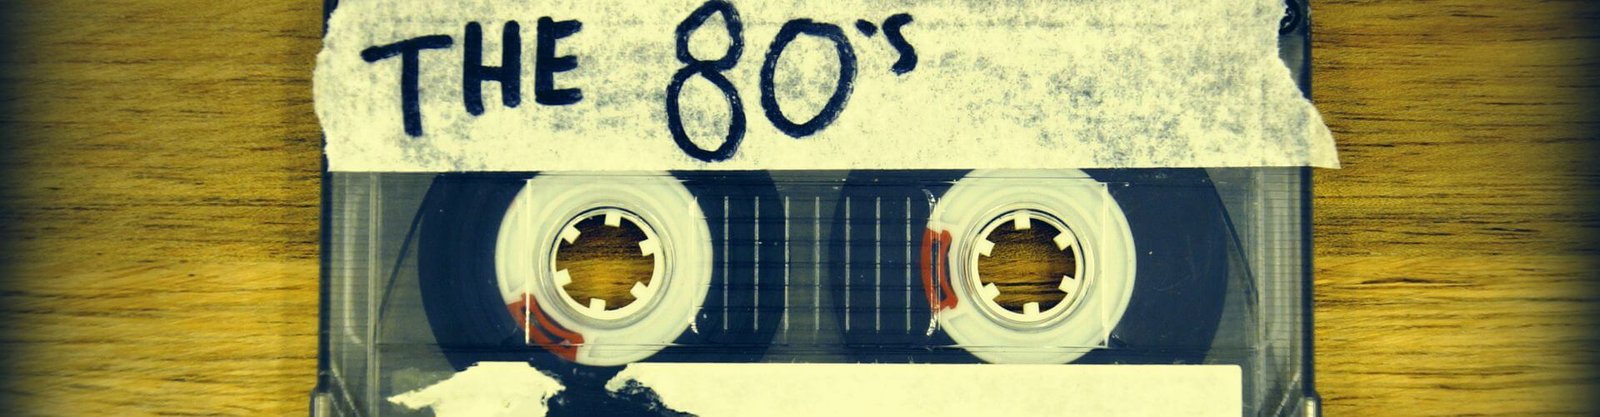 Viaje no tempo: Festa com tema anos 80 traz nostalgia e diversão